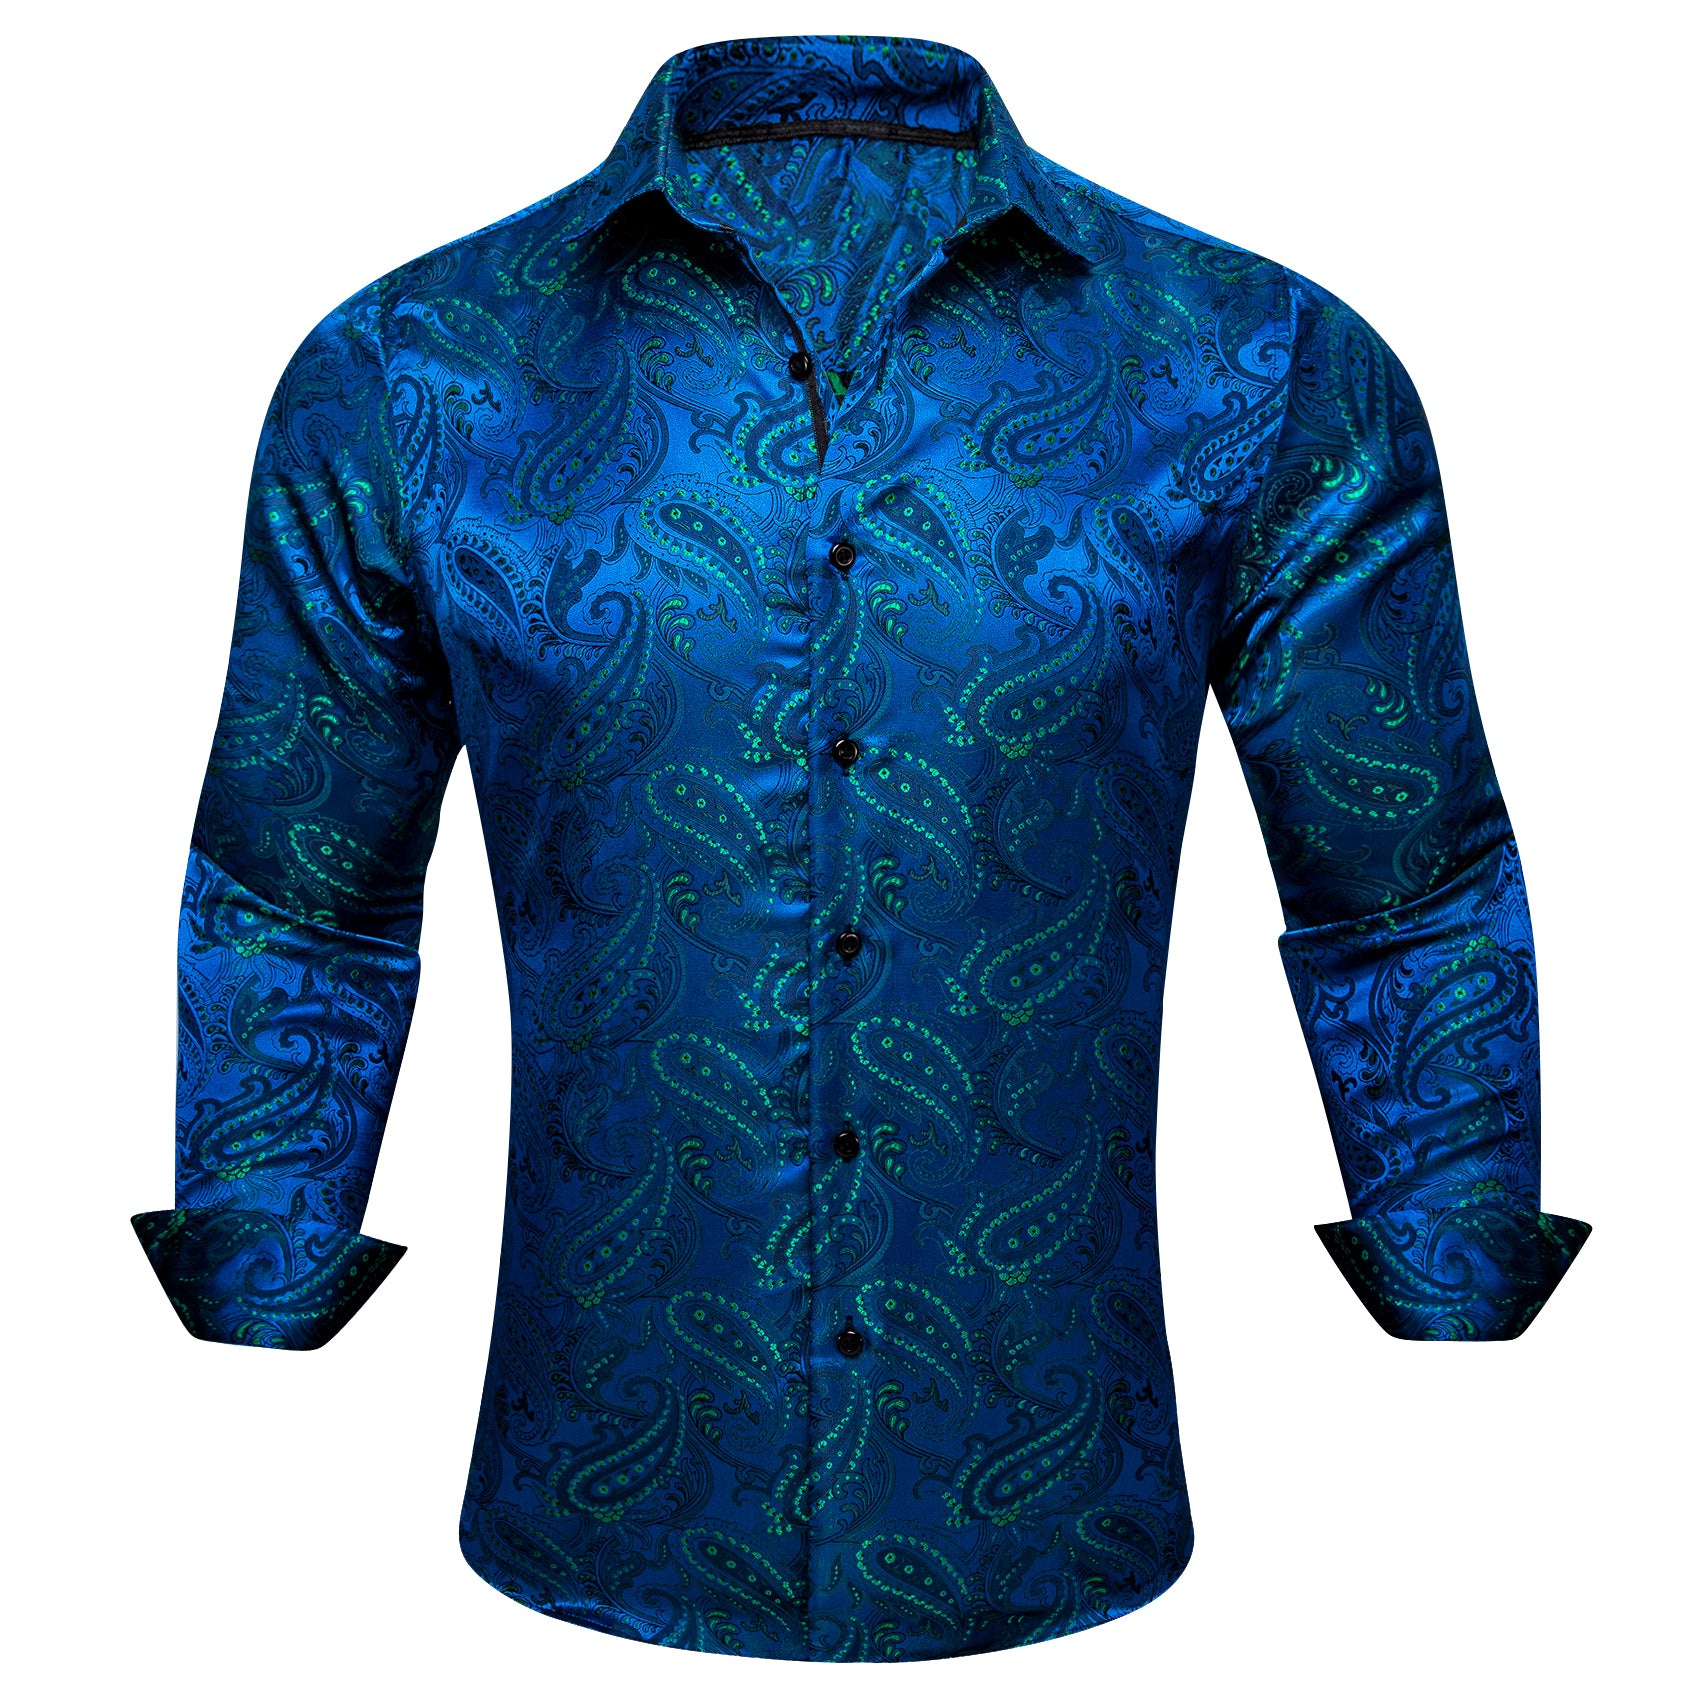 Barry.wang Peacock Blue Green Floral Silk Men's Shirt